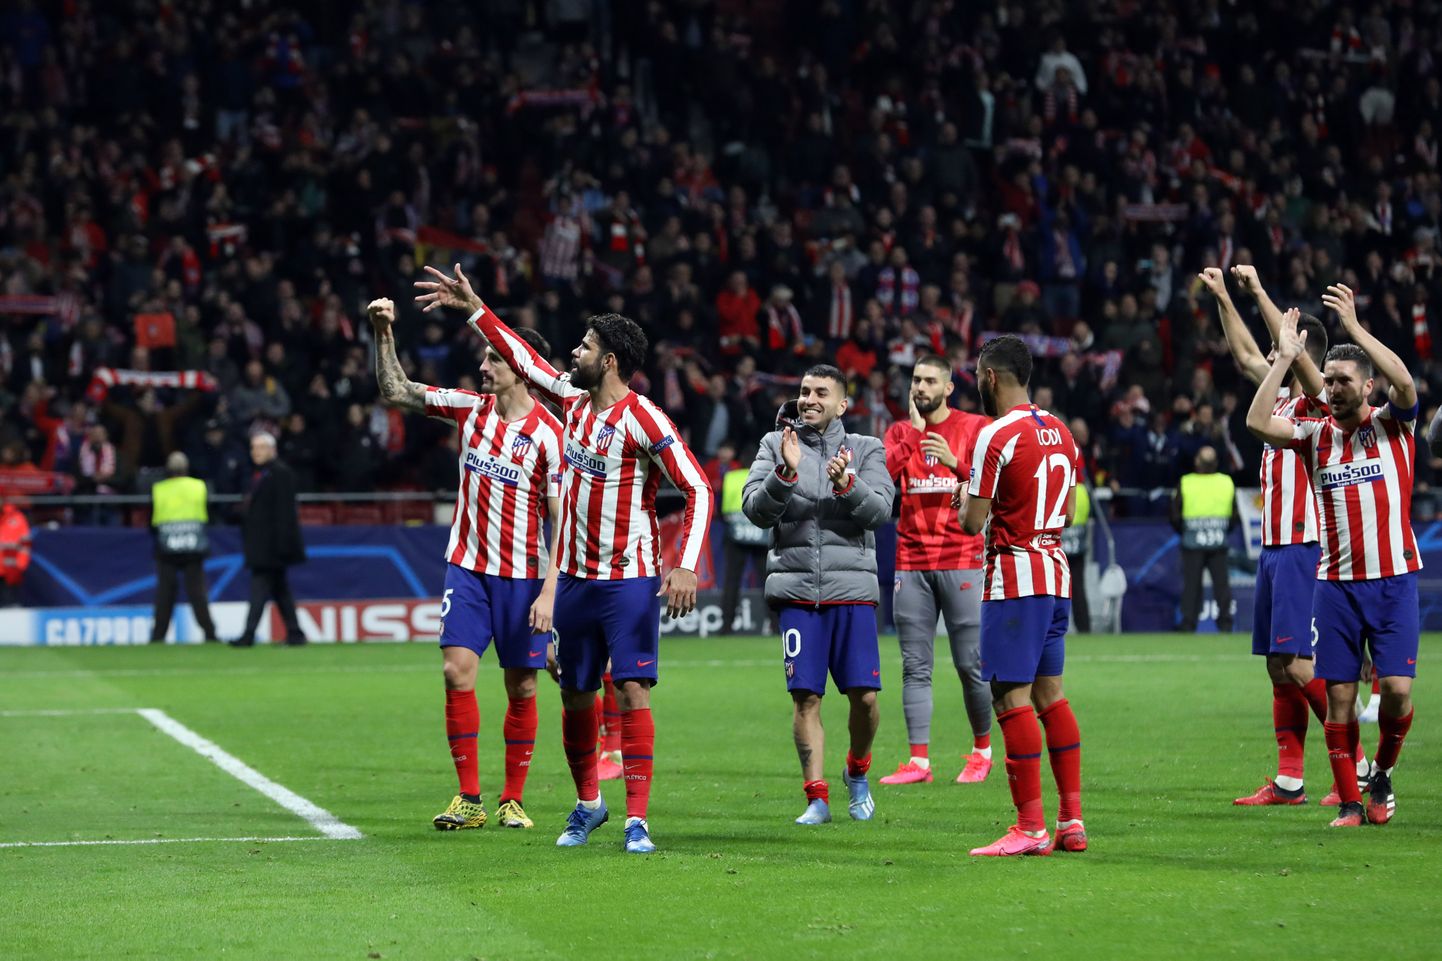 Madridi Atletico pärast kohtumist fänne tänamas. Pilt on illustratiivne.